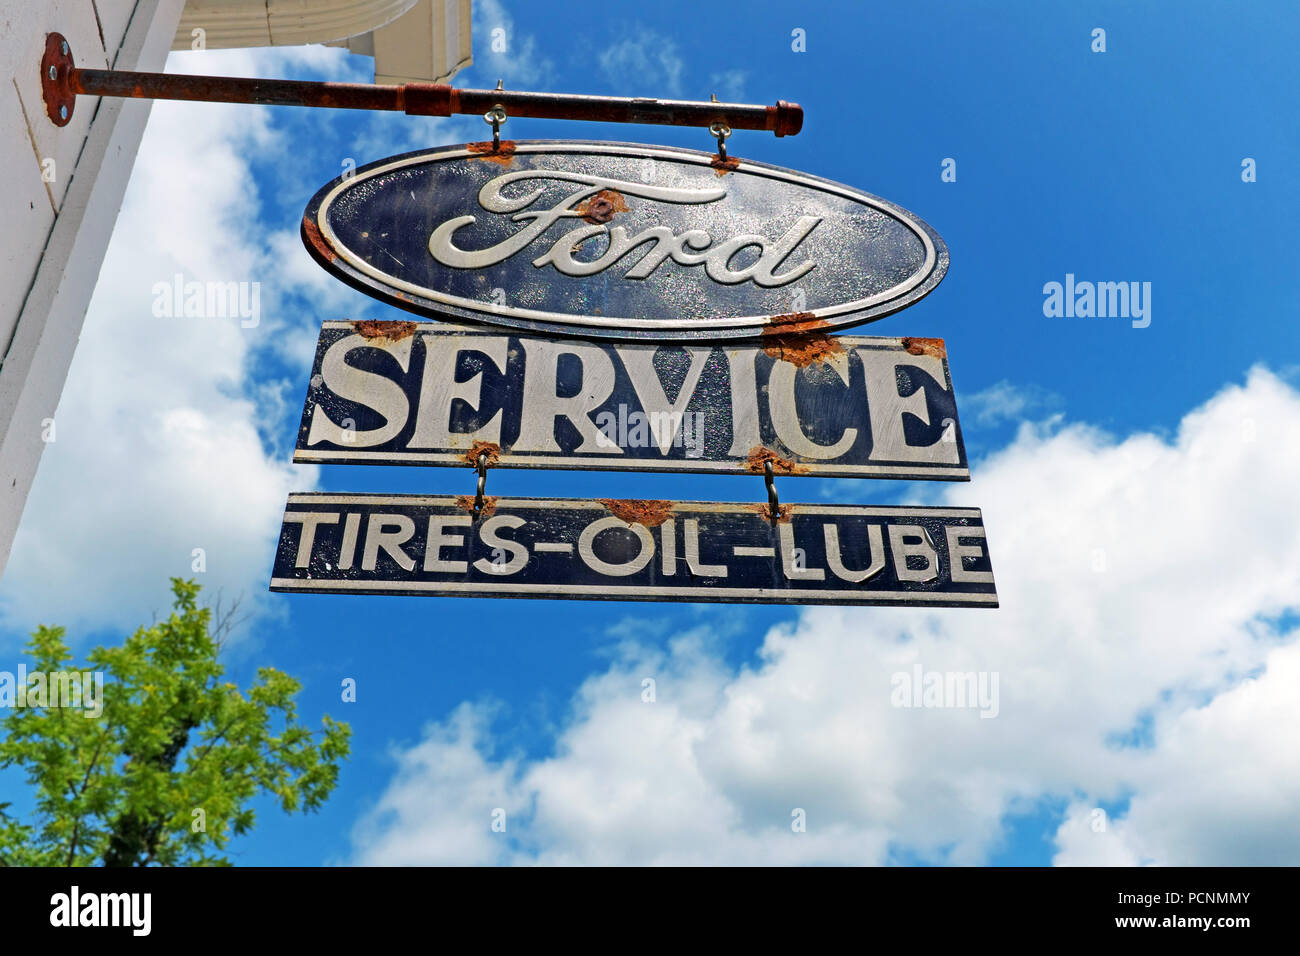 Altmodische authentisches Zeichen hängt von einer Garage in Mesopotamien, Ohio Ankündigung "Ford Service Tires-Oil-Lube' Stockfoto